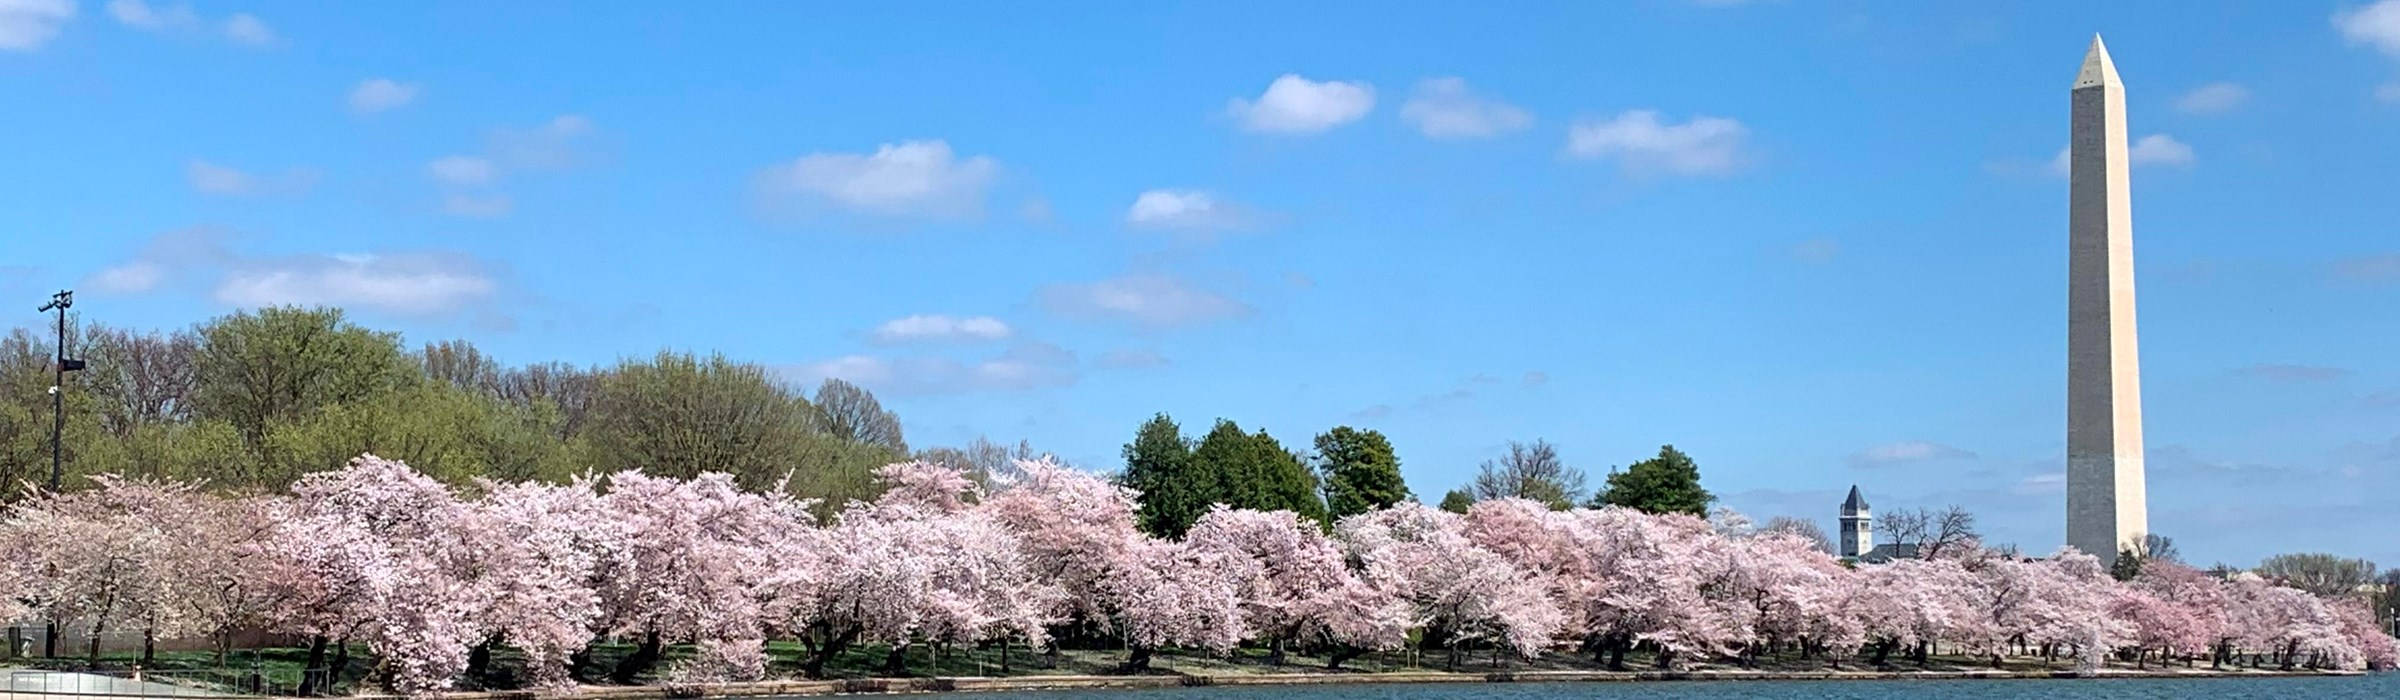 Parquenacional Con Cerezos En Flor. Fondo de pantalla